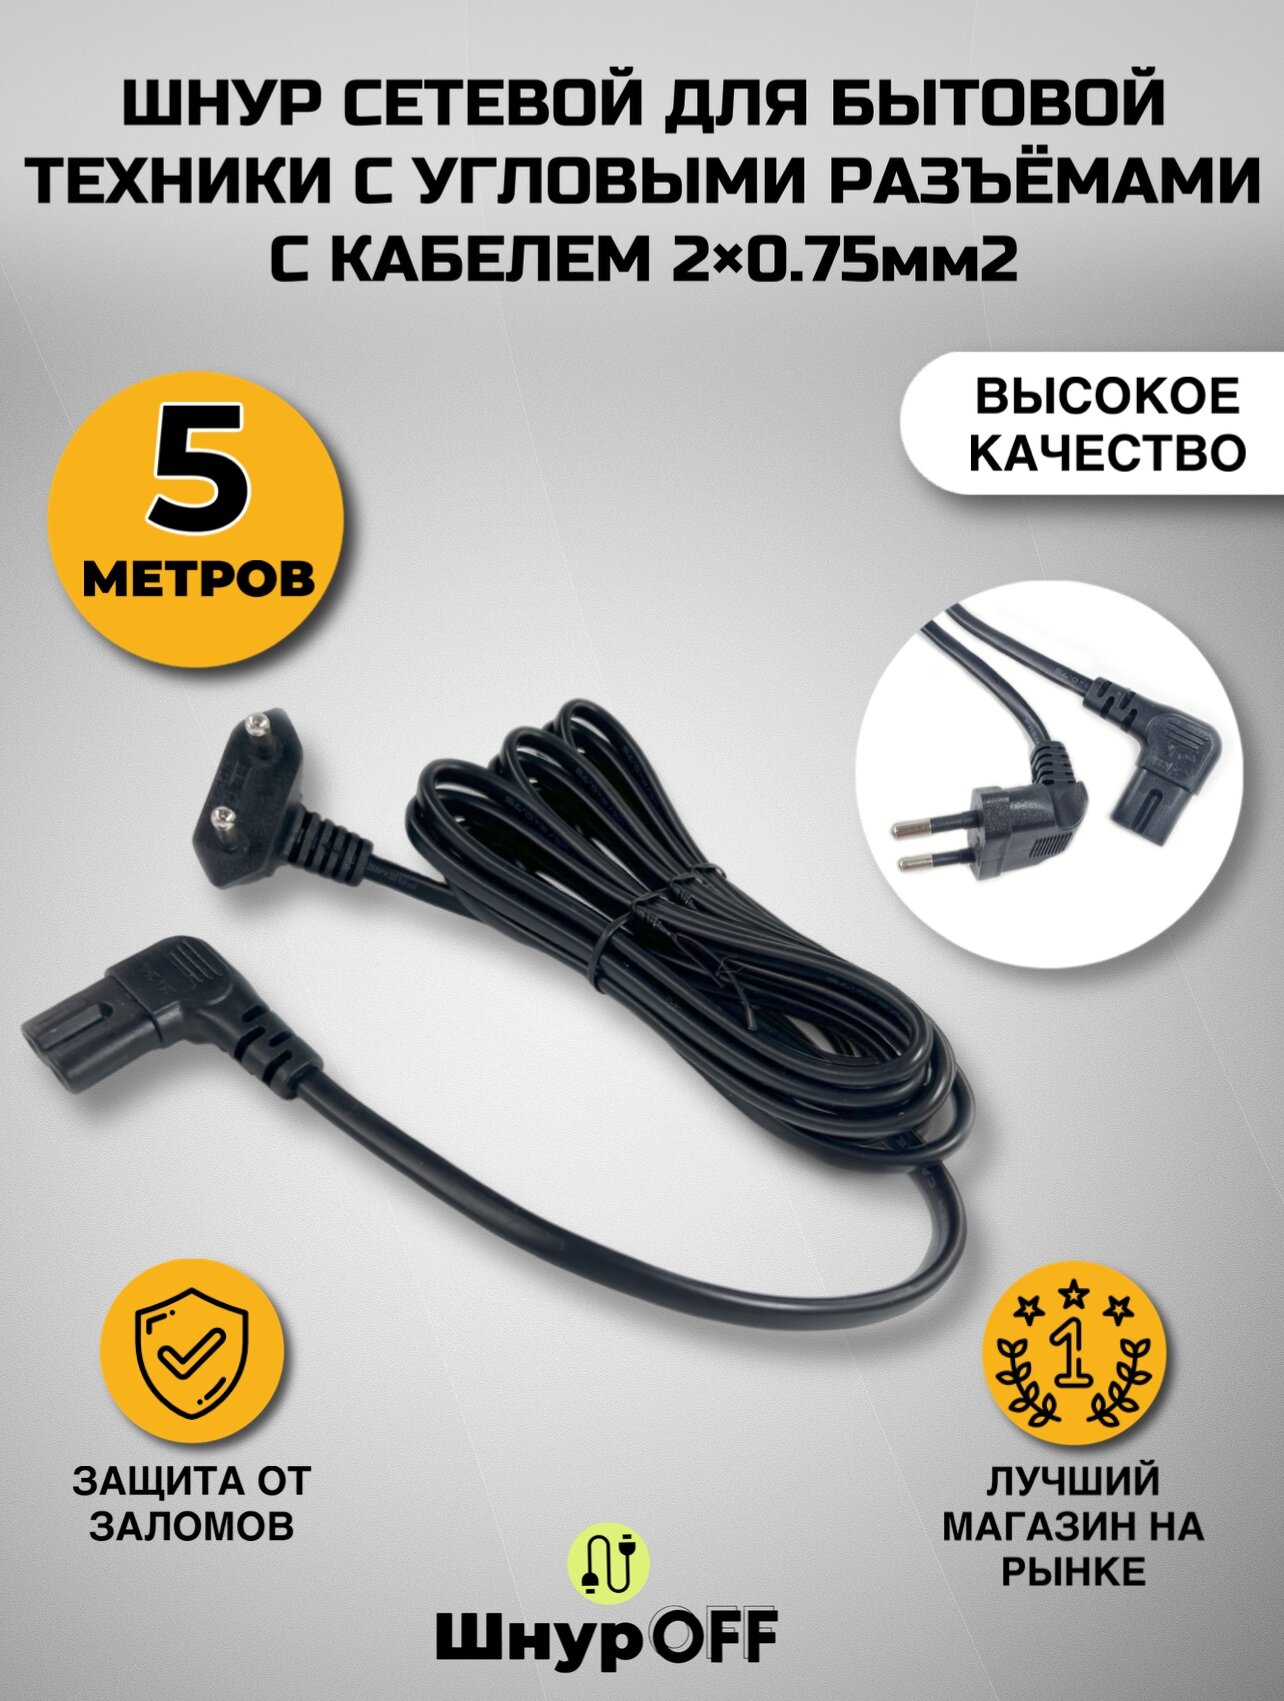 Шнур сетевой для бытовой техники с угловыми разъемами с кабелем 2x0.75мм2 (5.0 метров)